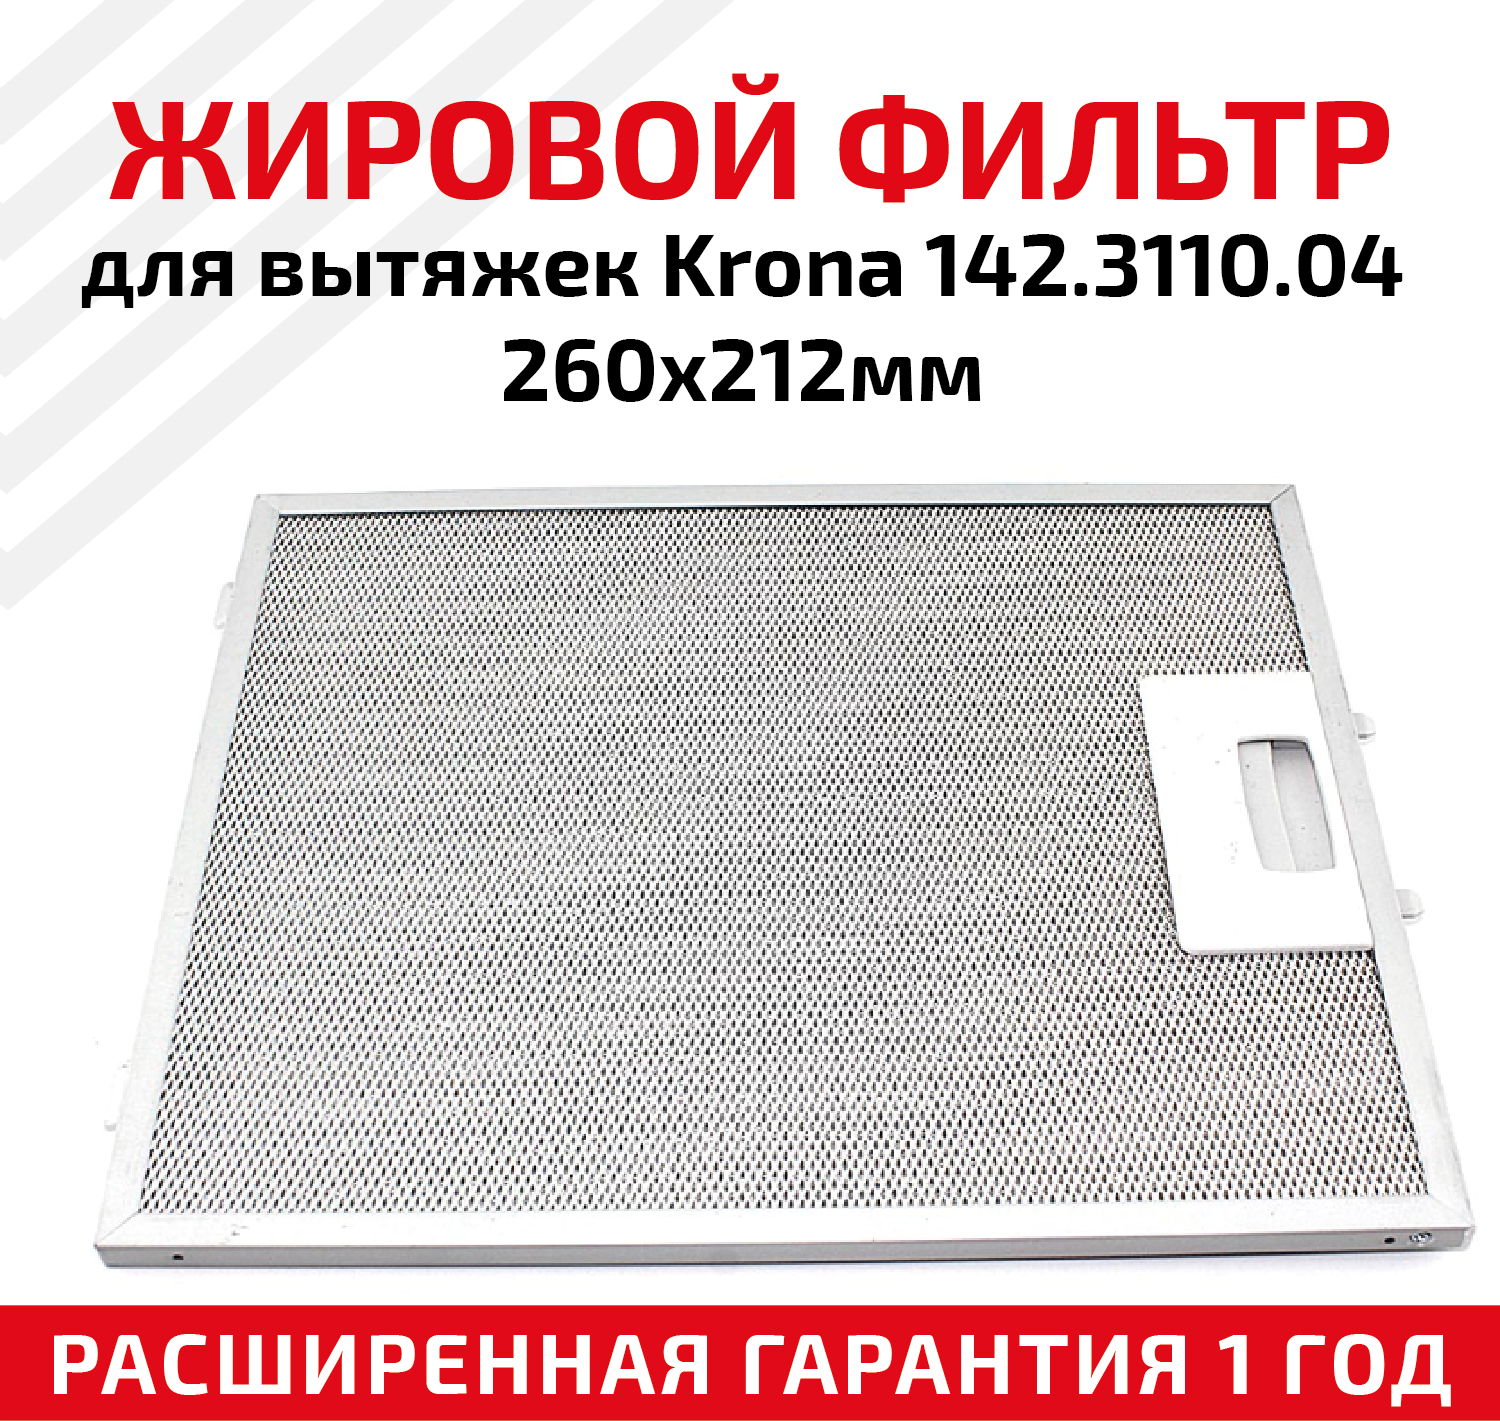 Жировой фильтр (кассета) алюминиевый (металлический) рамочный для кухонных вытяжек Krona 142.3110.04, многоразовый, 260х212мм